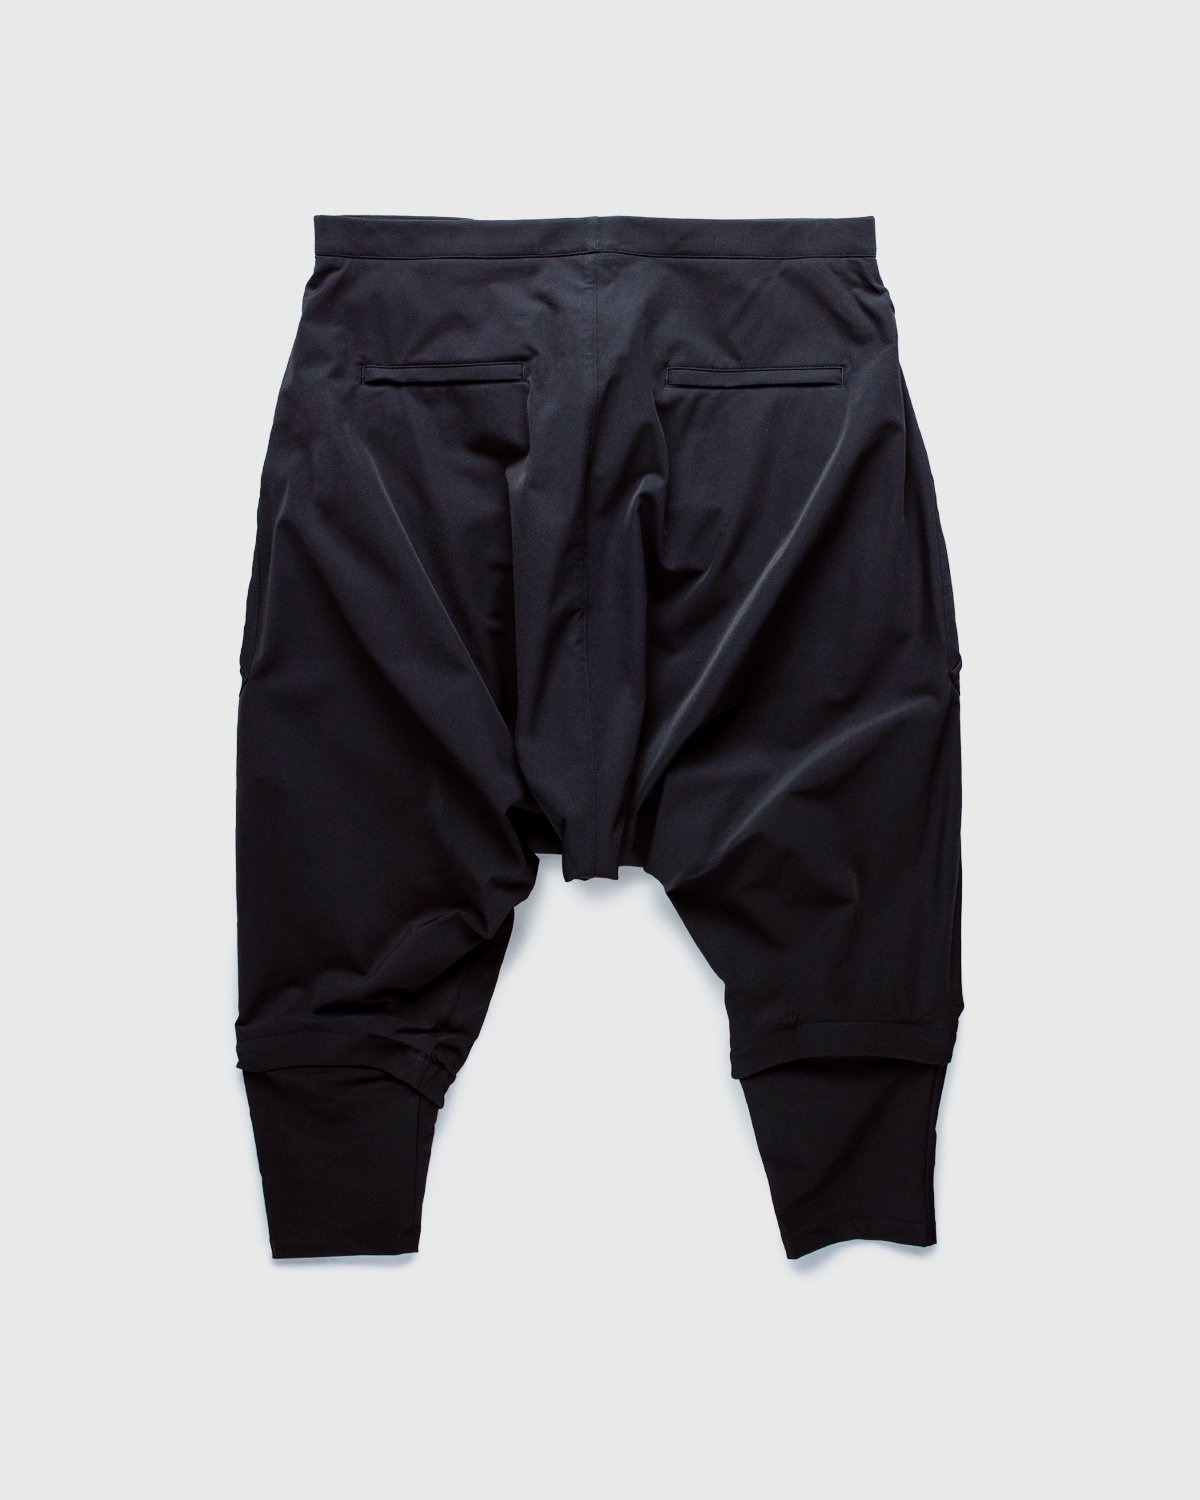 ACRONYM – P30A-DS Pants Black - Pants - Black - Image 2